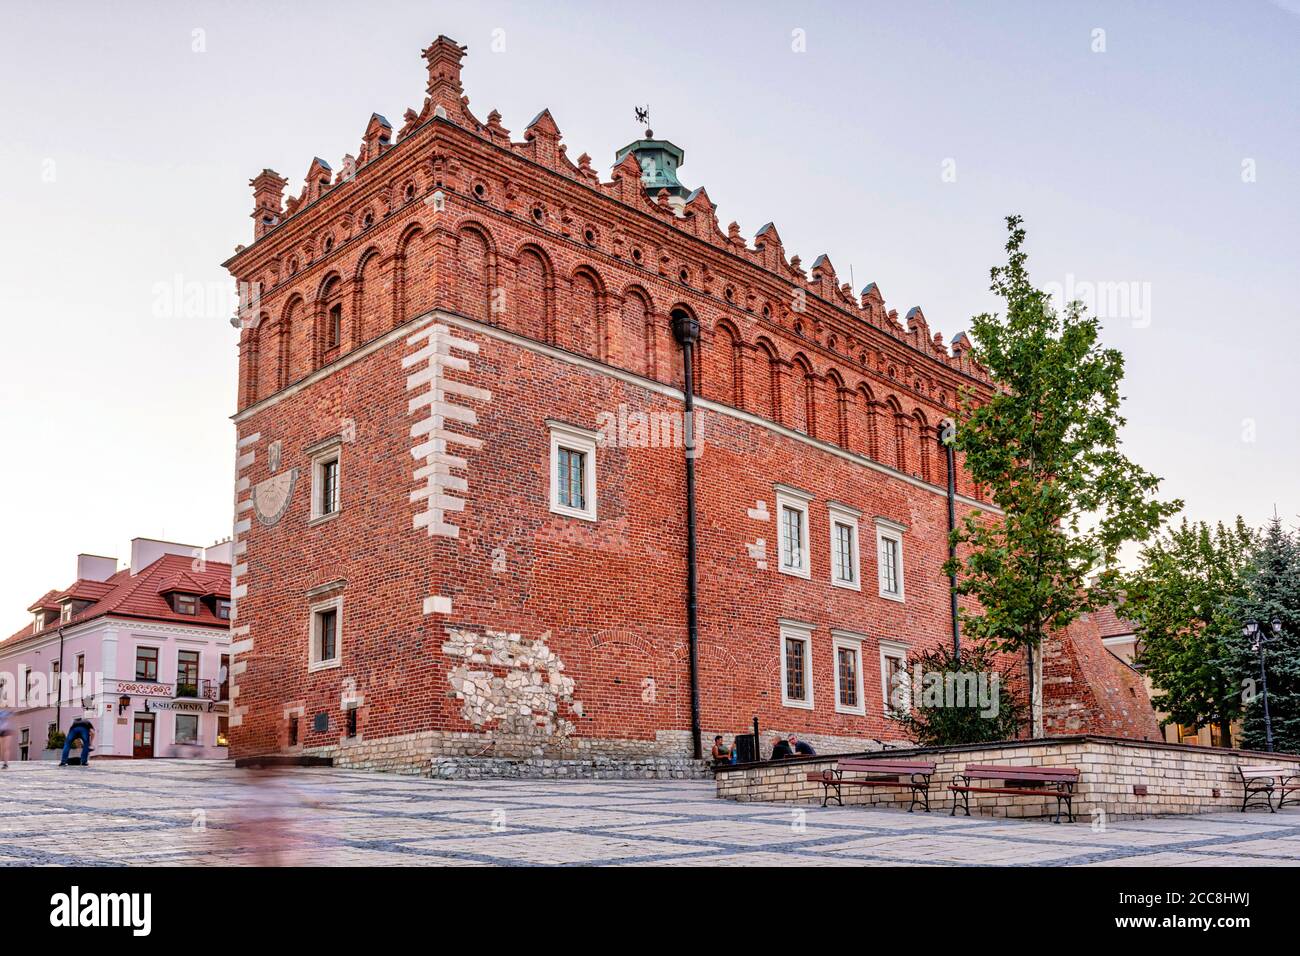 Sandomierz, Polen - 11. August 2020: Hauptplatz, mittelalterliches Rathaus im Zentrum. Im Hintergrund sind historische Mietshäuser zu sehen. Stockfoto